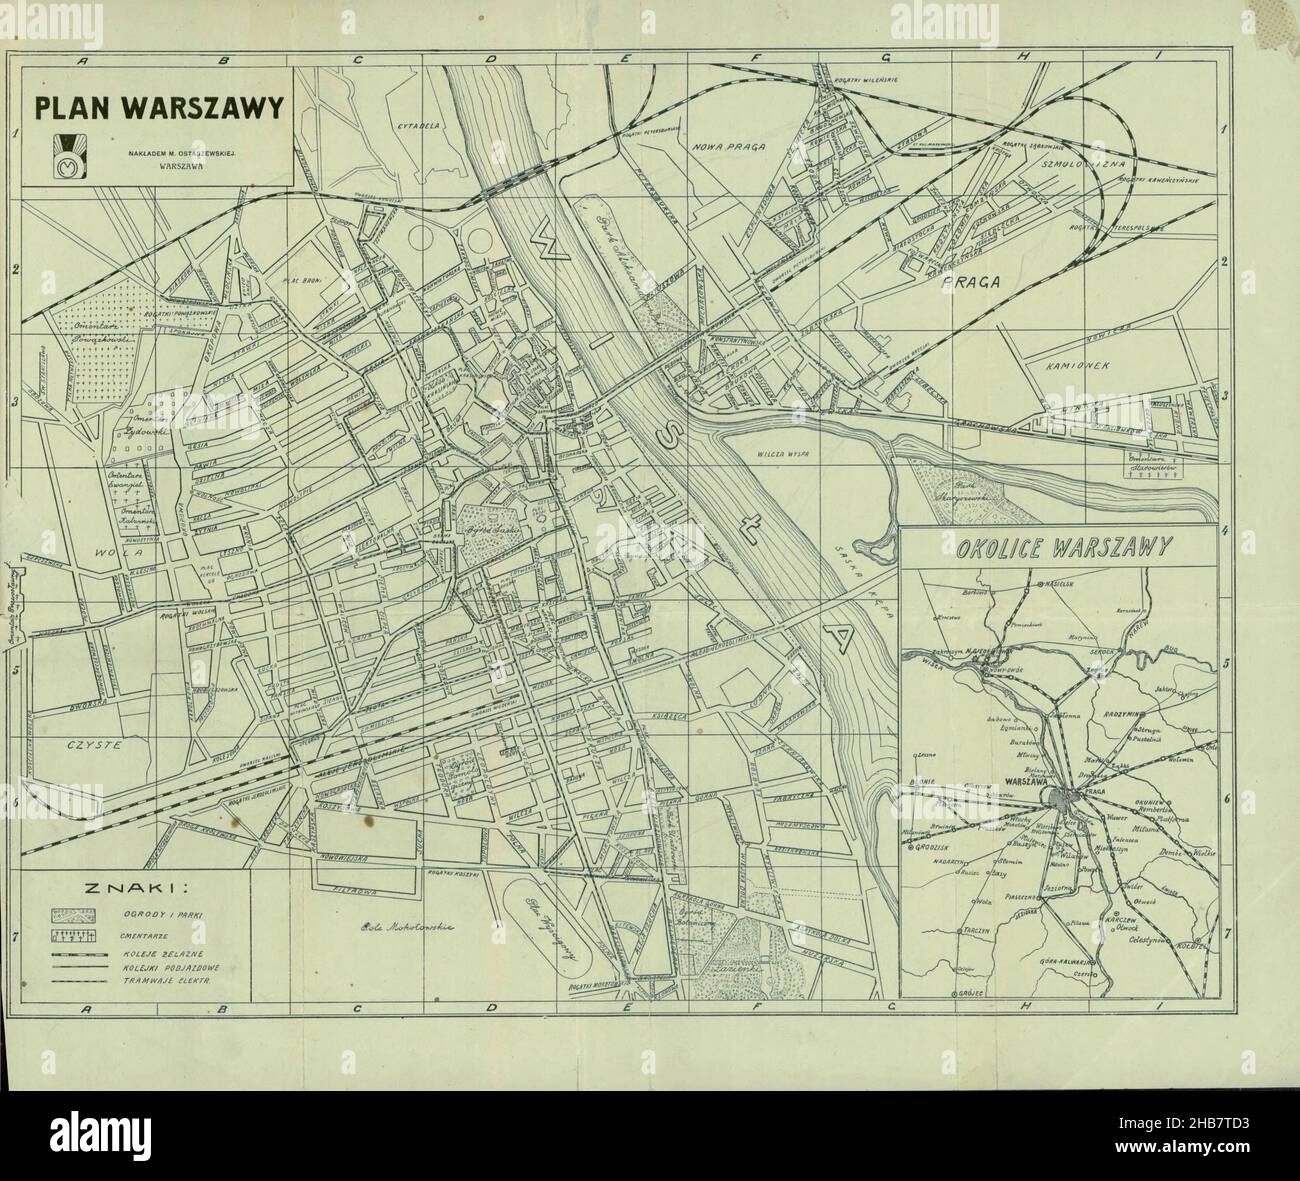 Warsaw Plan, Warsaw Map, Map of Warsaw, Mapa Warszawy, Warsaw Print, Warsaw Plan, Warsaw Poster, Old Warsaw Plan, Retro Warsaw Poster, Warsaw Download Stock Photo